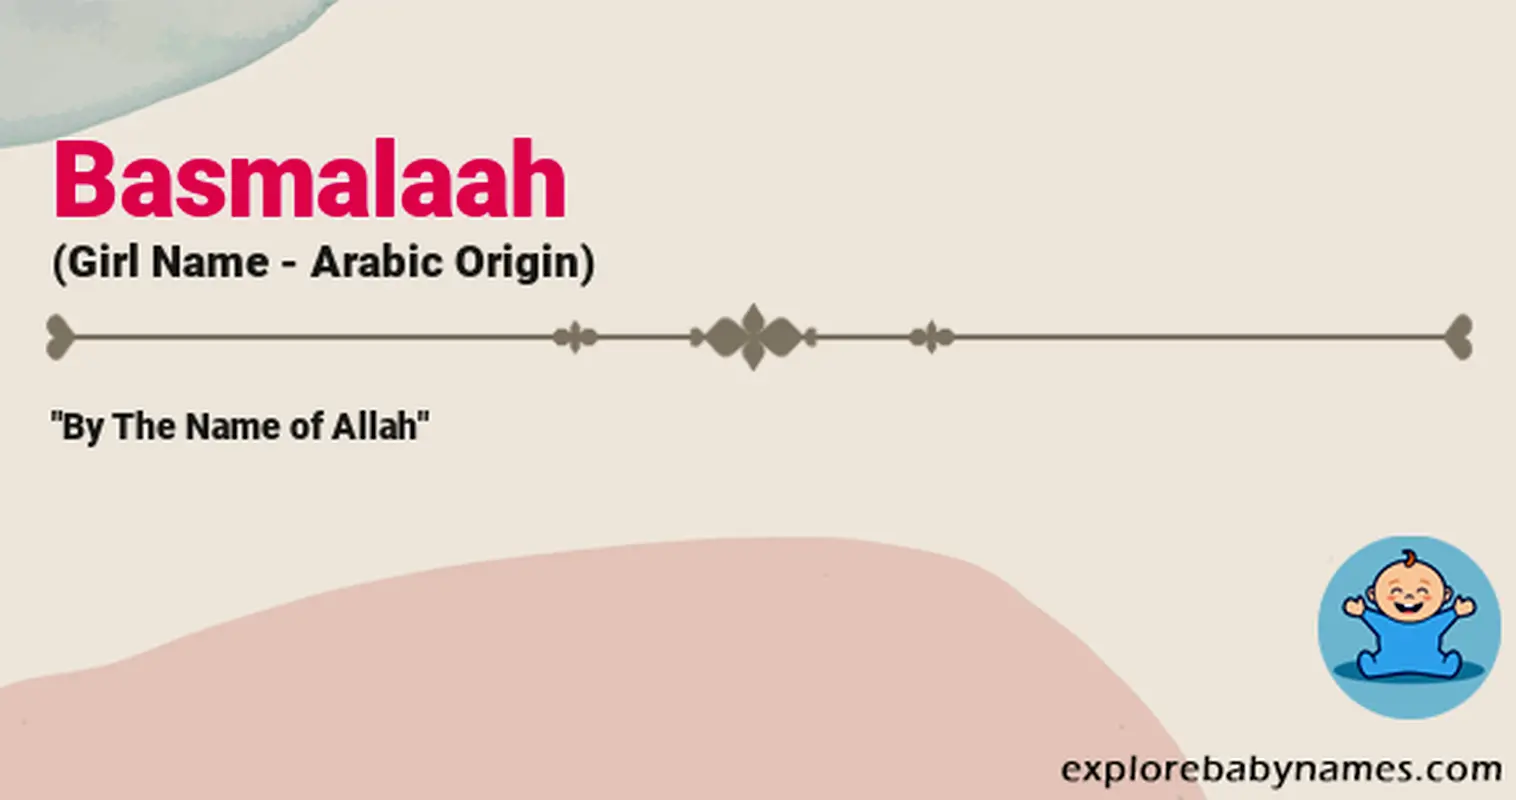 Meaning of Basmalaah